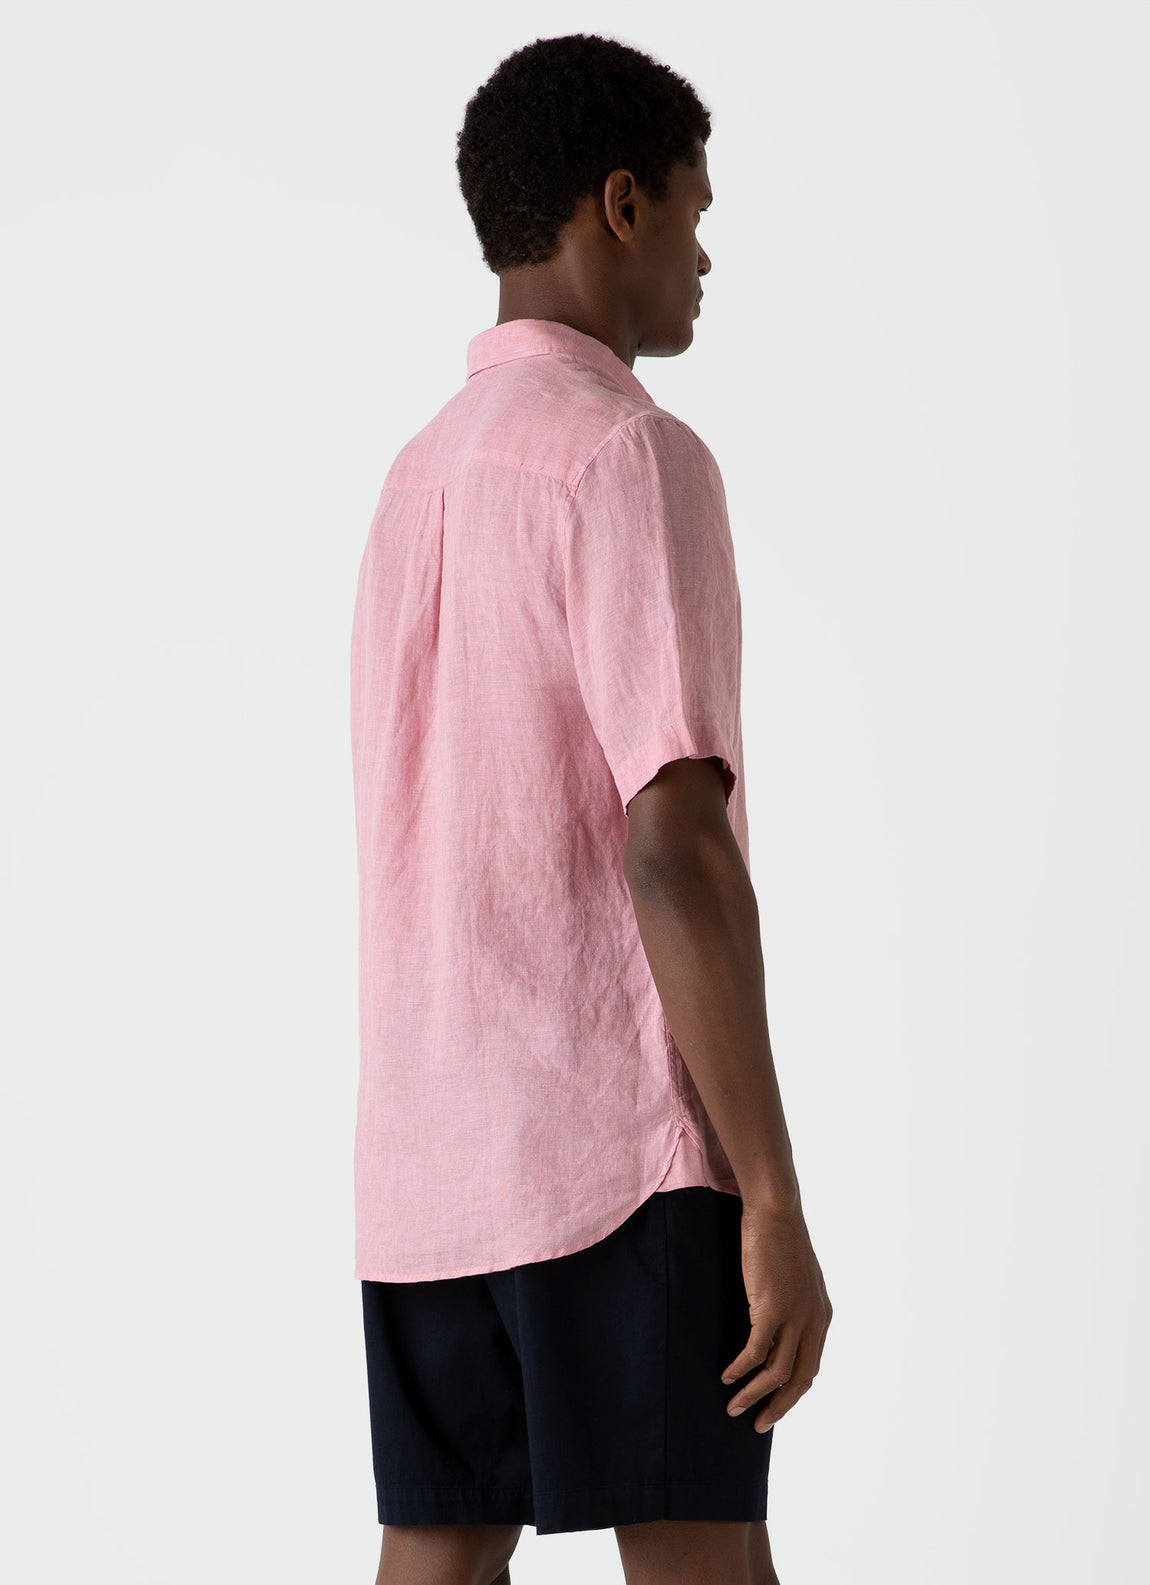 Men's Short Sleeve Linen Shirt in Shell Pink